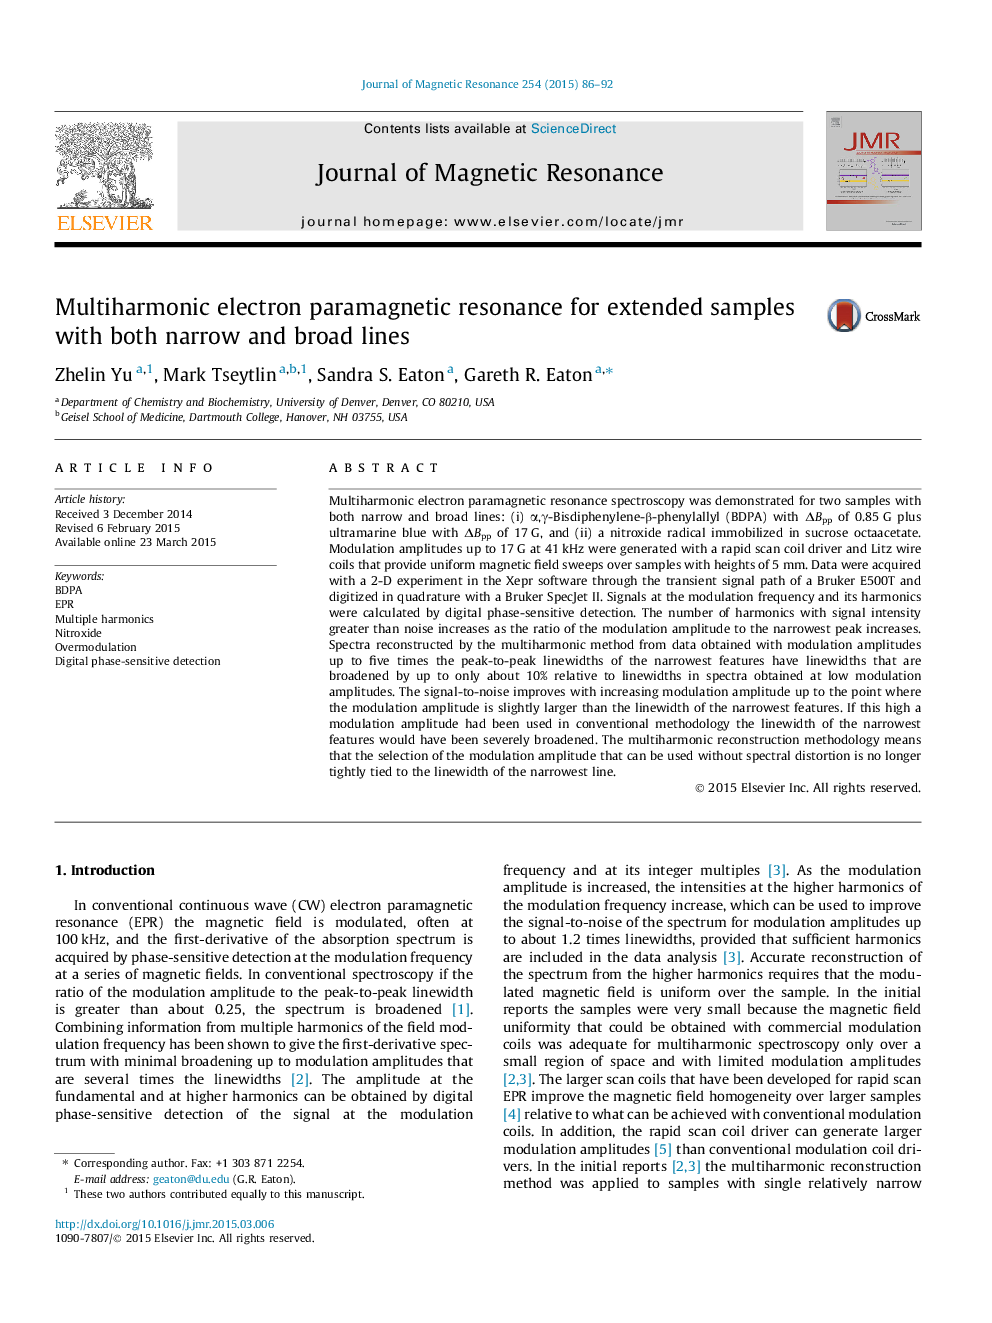 رزونانس پارامغناطیسی الکترومغناطیسی چندگانه برای نمونه های گسترده با خطوط باریک و گسترده 